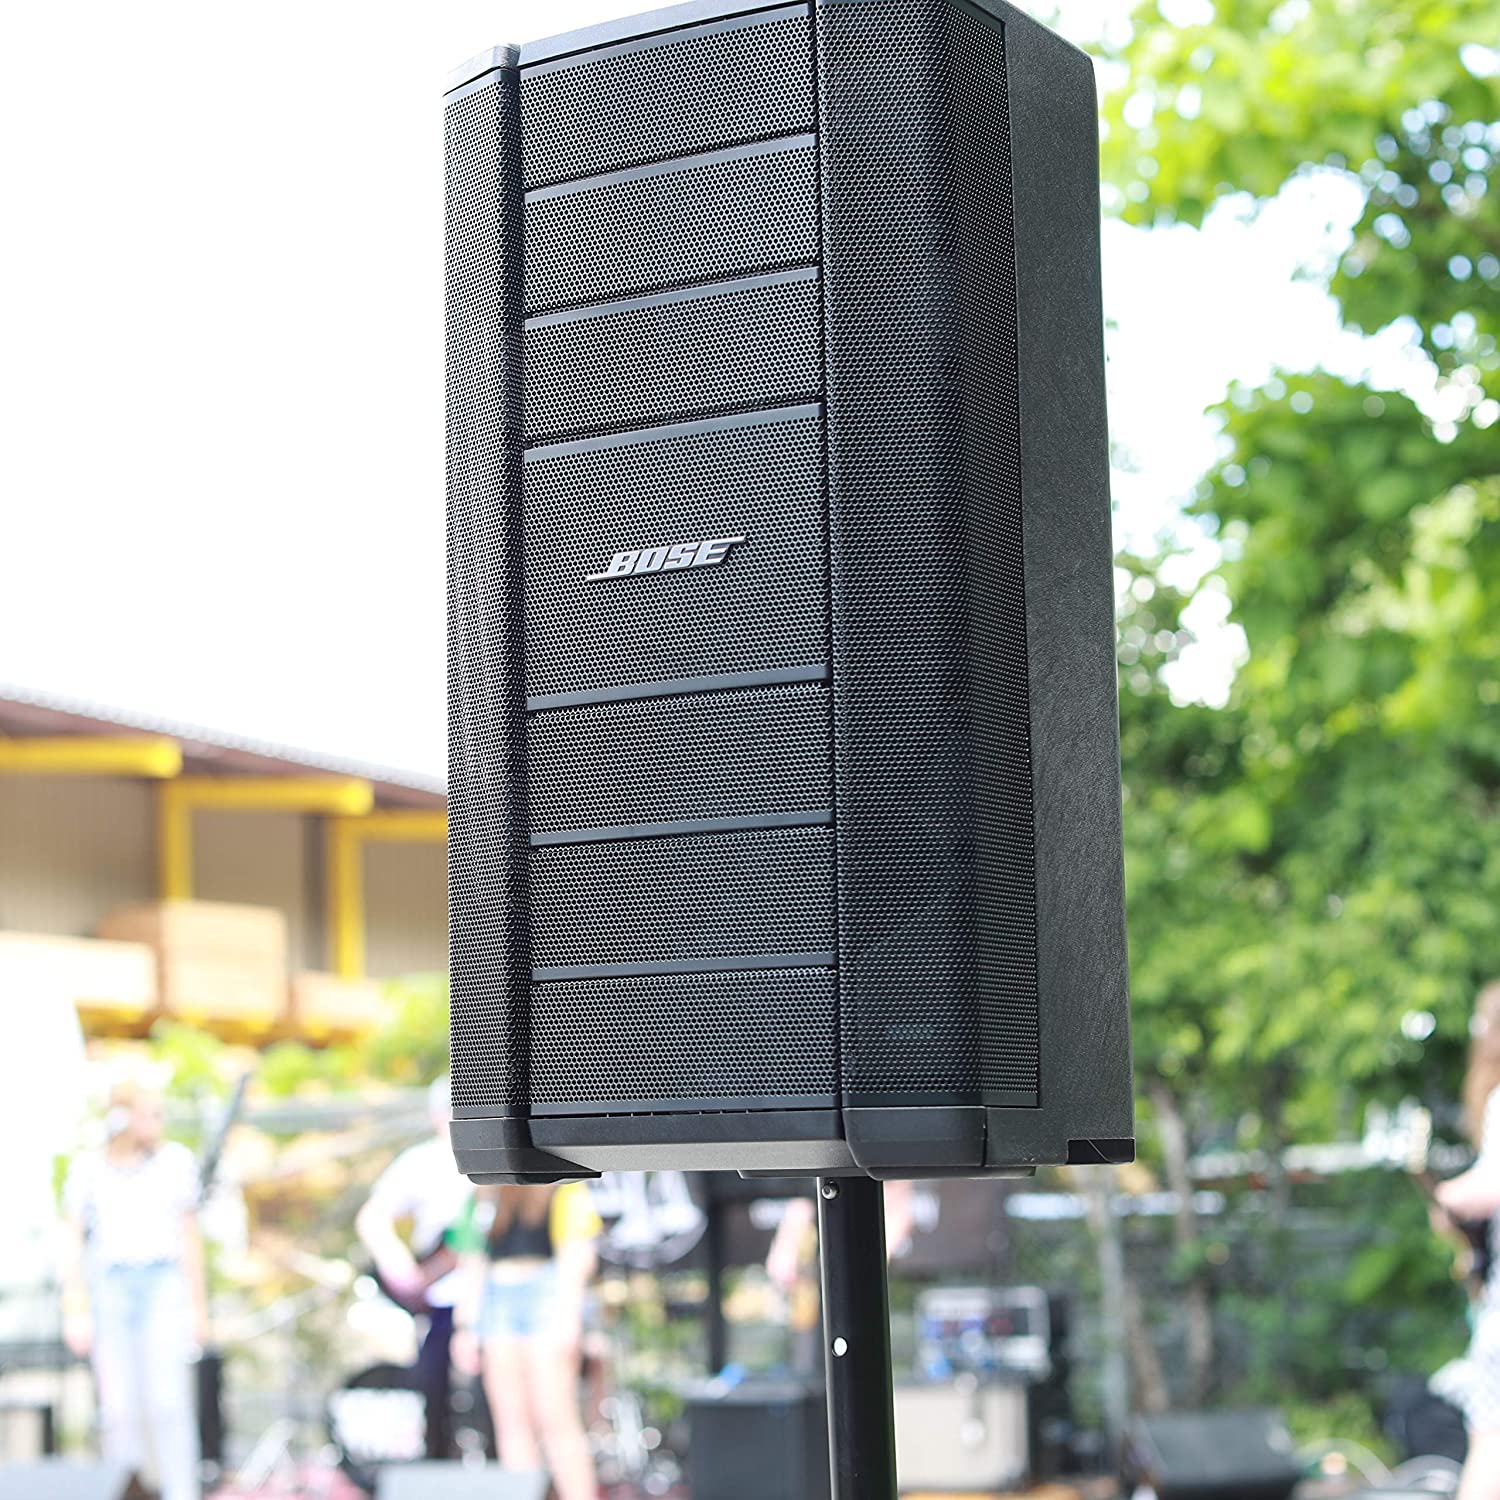 Bose F1 Model 812 Flexible Array Loudspeaker